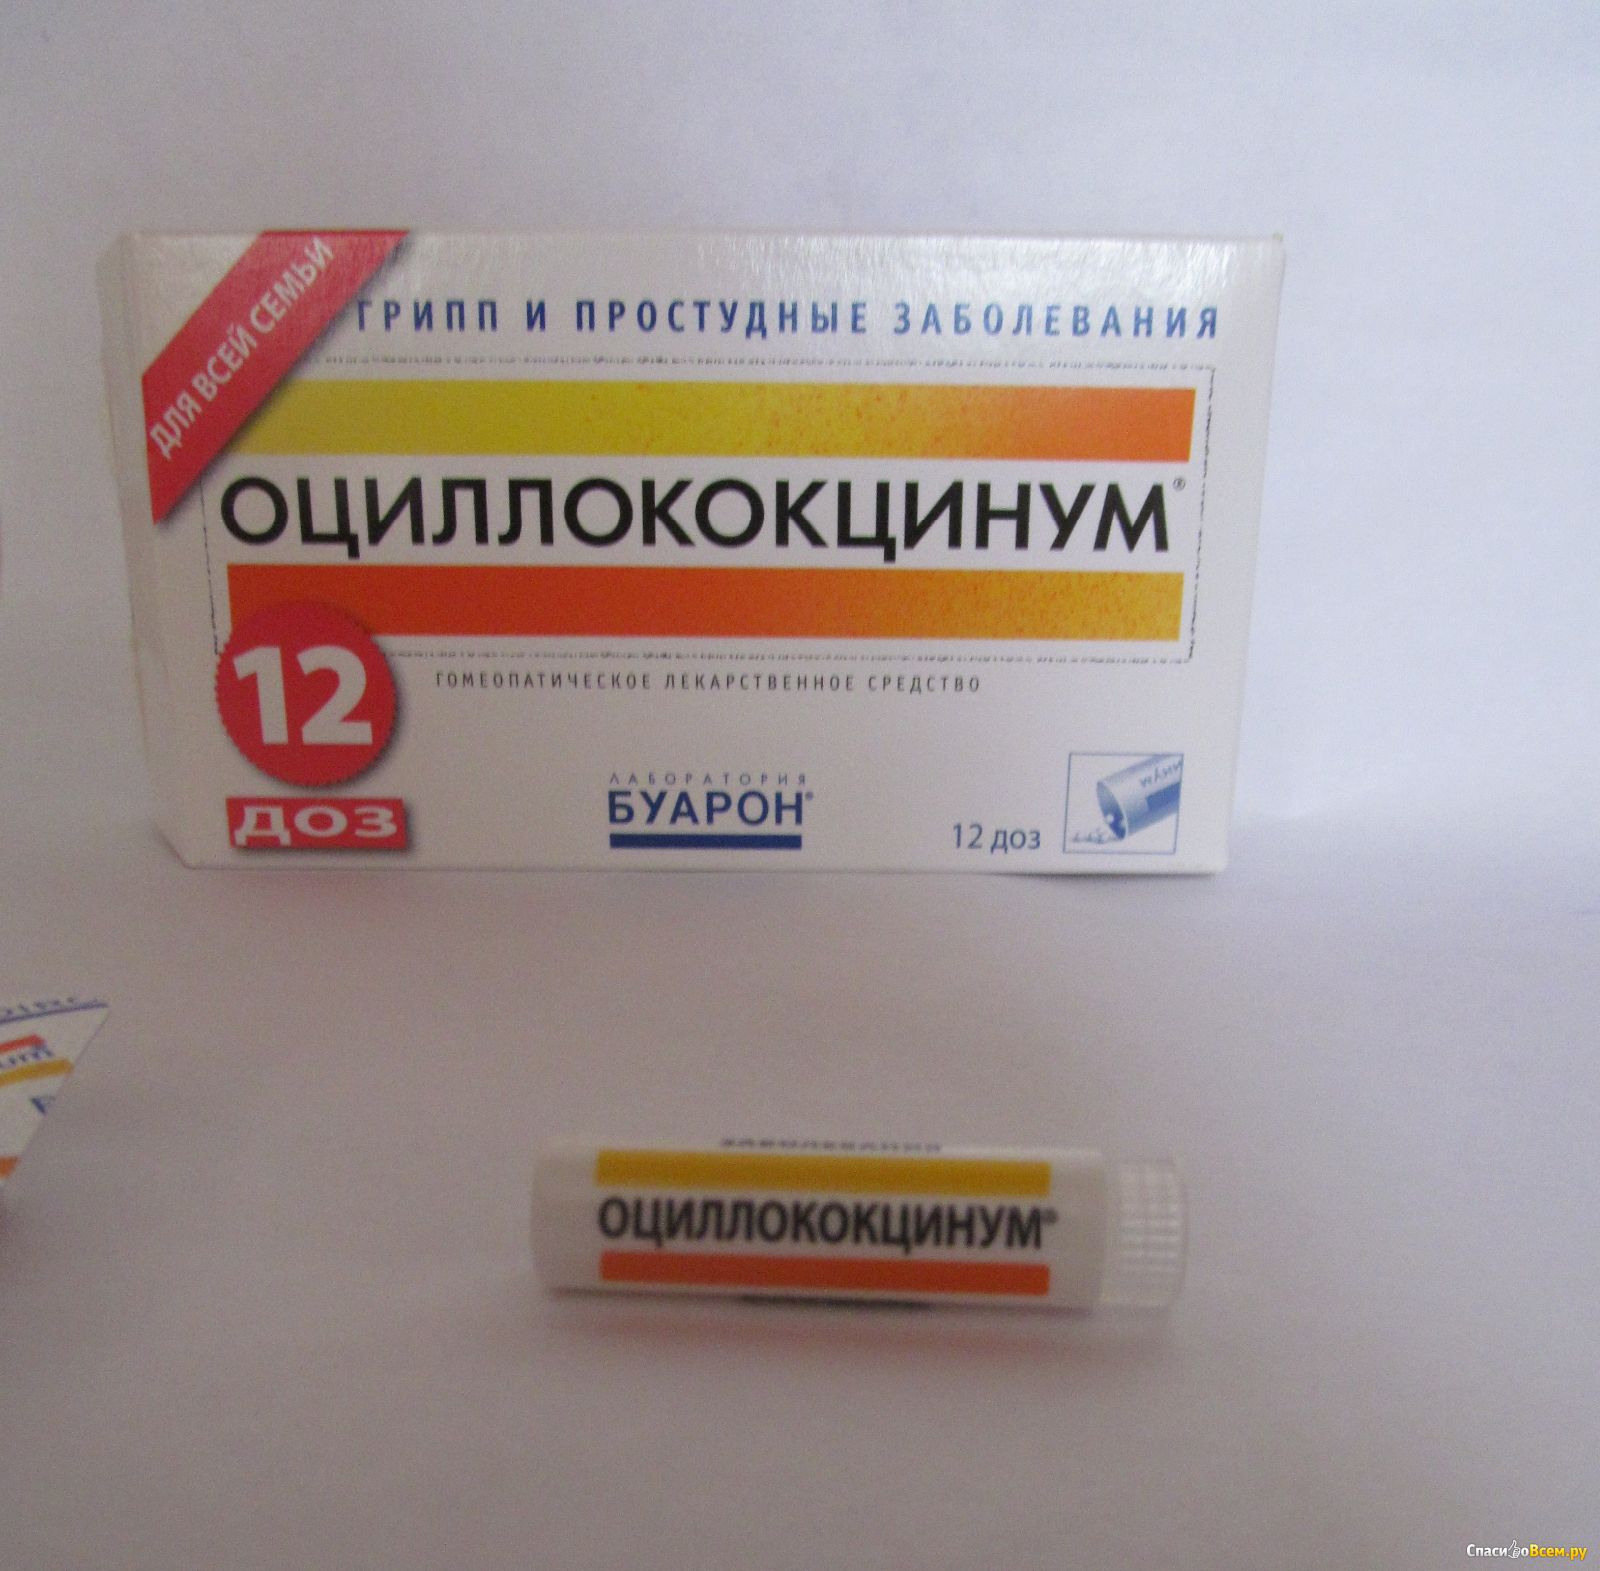 Хорошие лекарства от гриппа взрослым. Оциллококцинум n12 гранулы. Противовирусные таблетки Оциллококцинум. Противовирусное гомеопатическое средство Оциллококцинум. Лекарство гомеопатия Оциллококцинум.